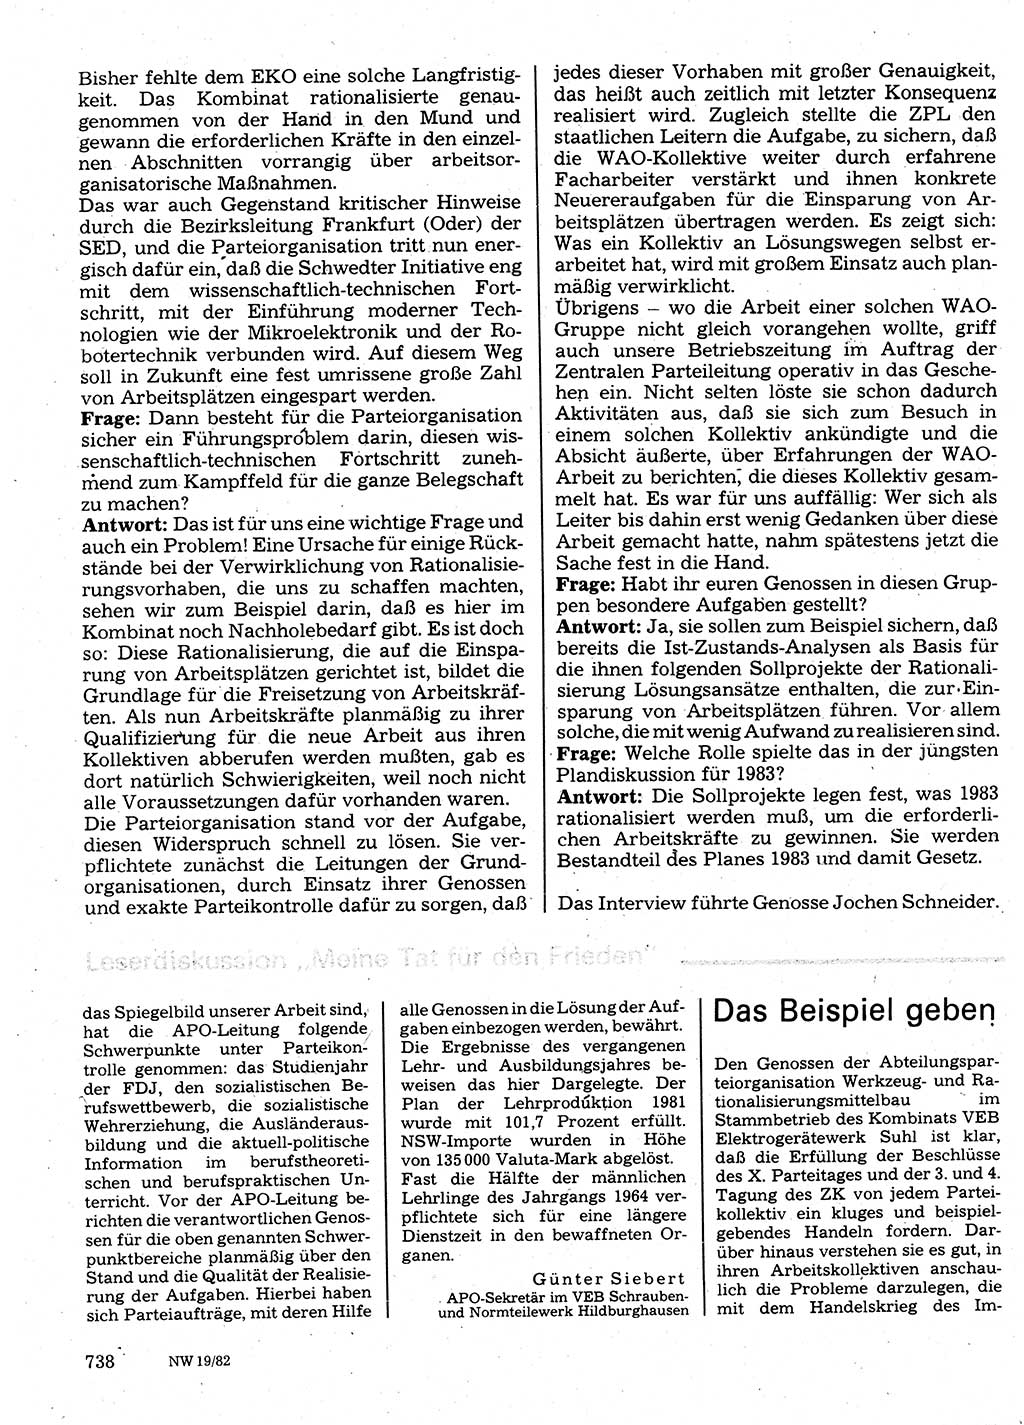 Neuer Weg (NW), Organ des Zentralkomitees (ZK) der SED (Sozialistische Einheitspartei Deutschlands) für Fragen des Parteilebens, 37. Jahrgang [Deutsche Demokratische Republik (DDR)] 1982, Seite 738 (NW ZK SED DDR 1982, S. 738)